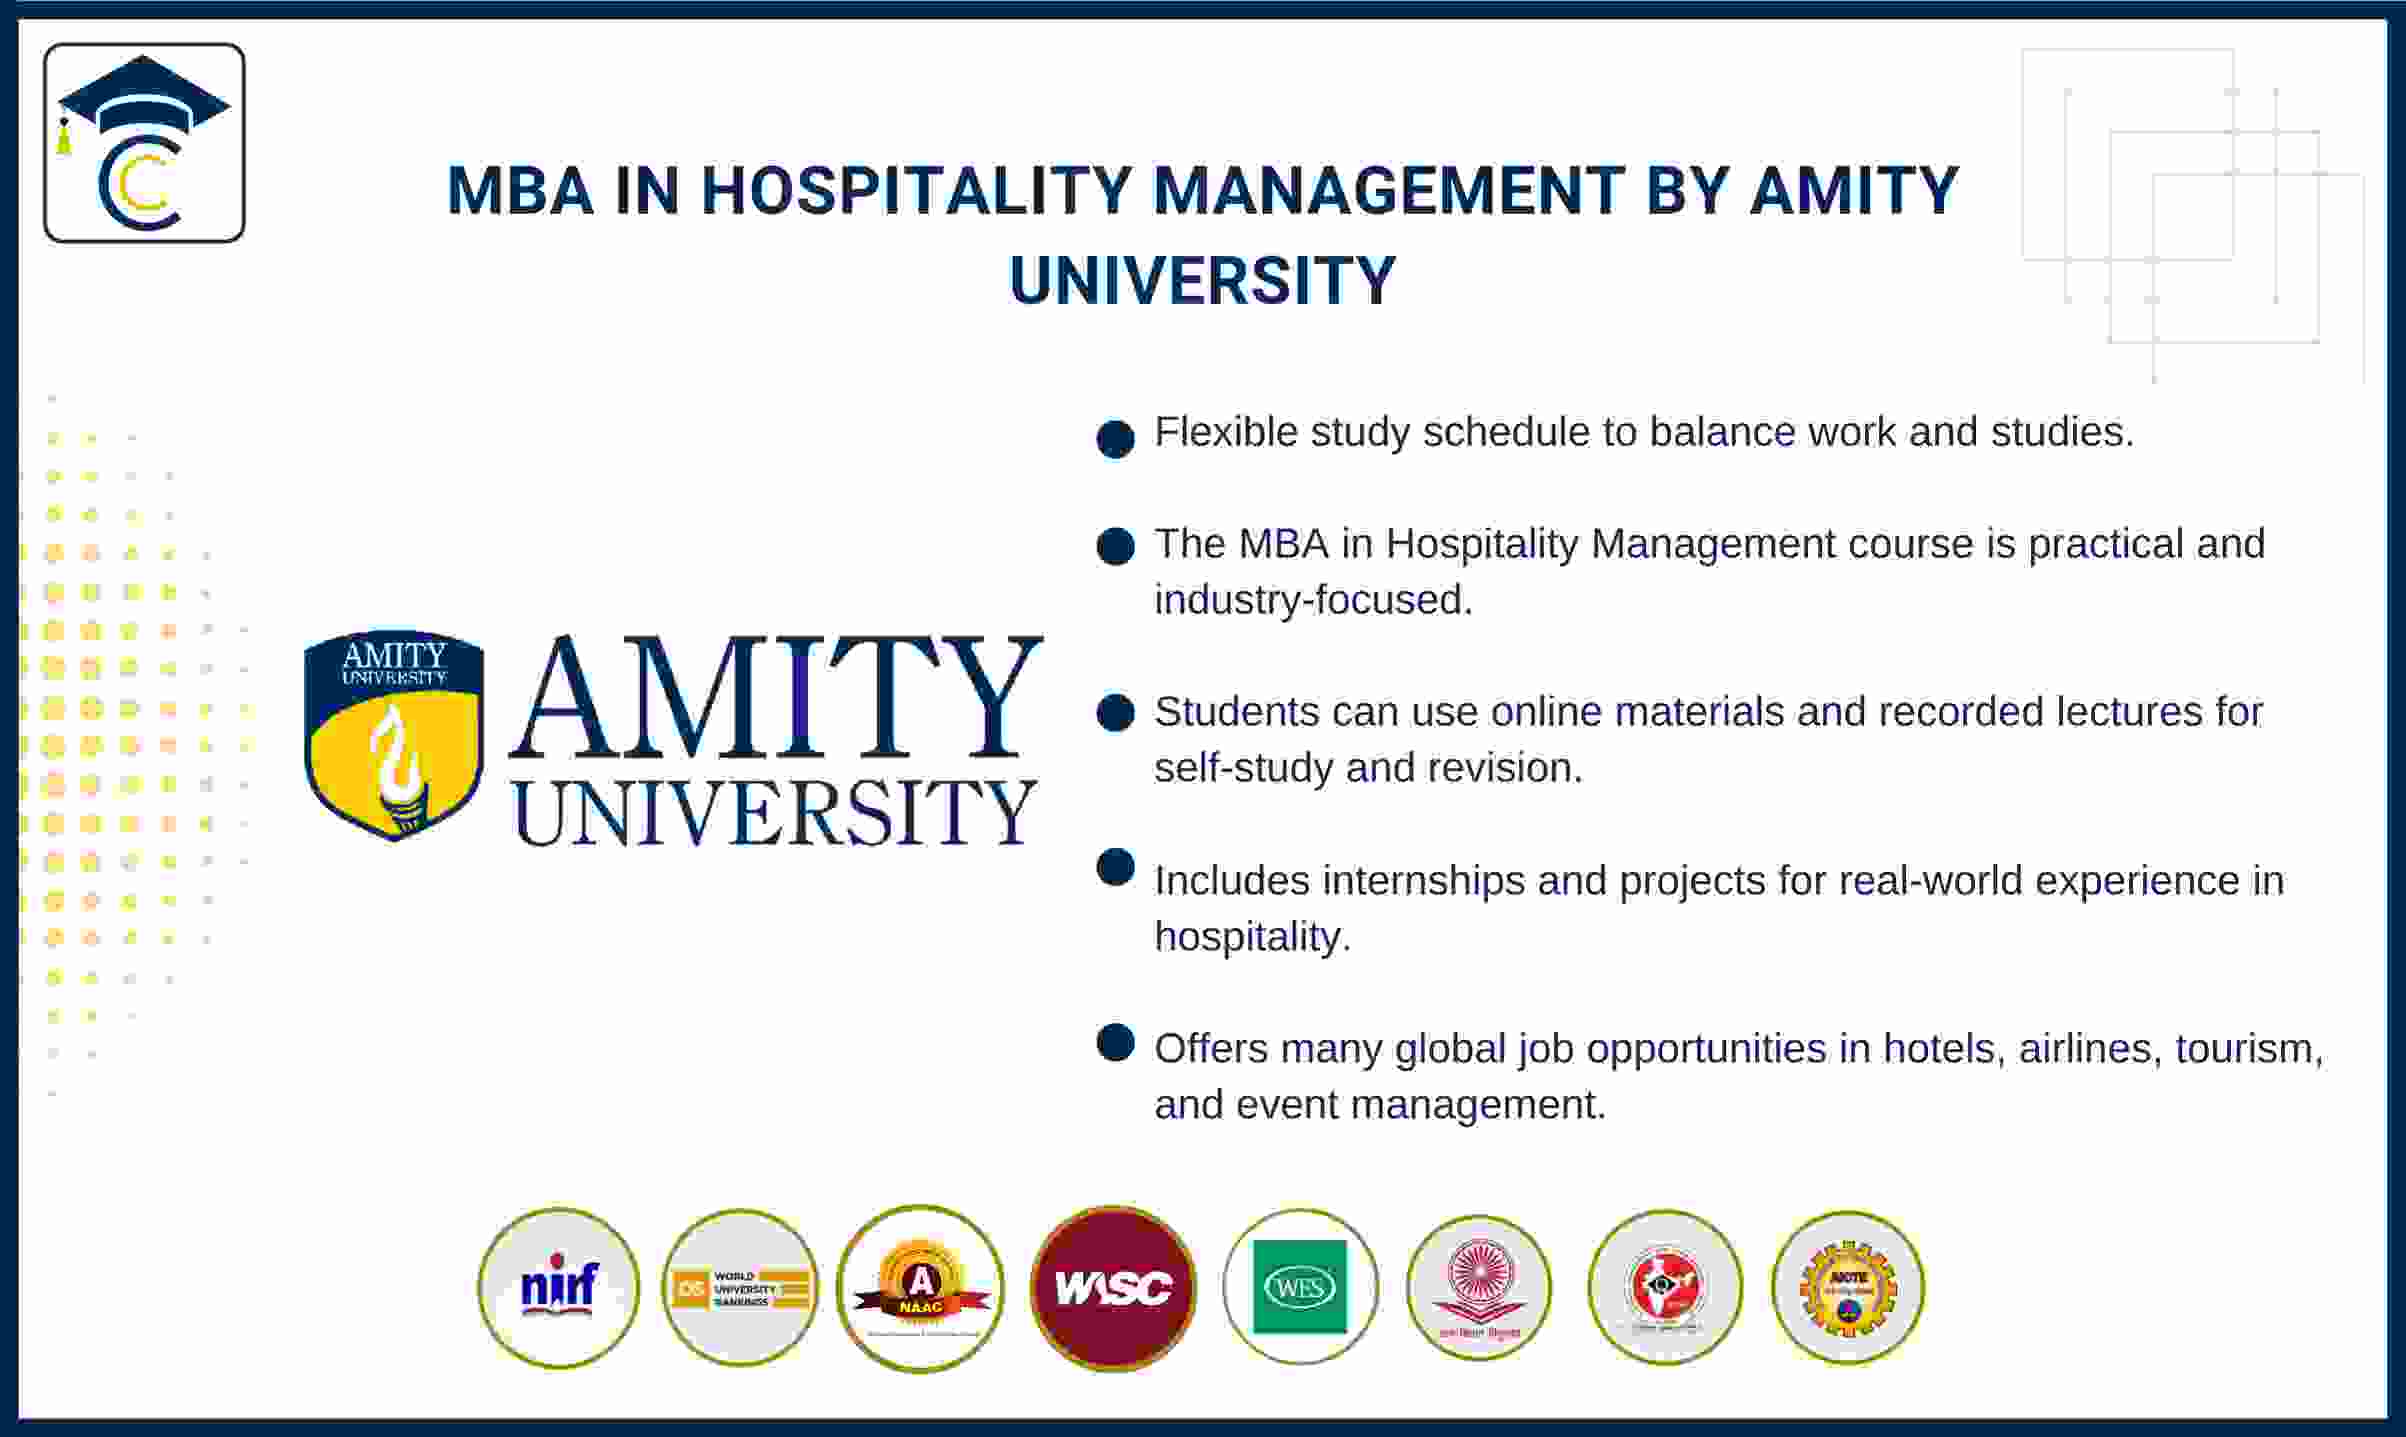 mba-in-hospitality-management-amity-university